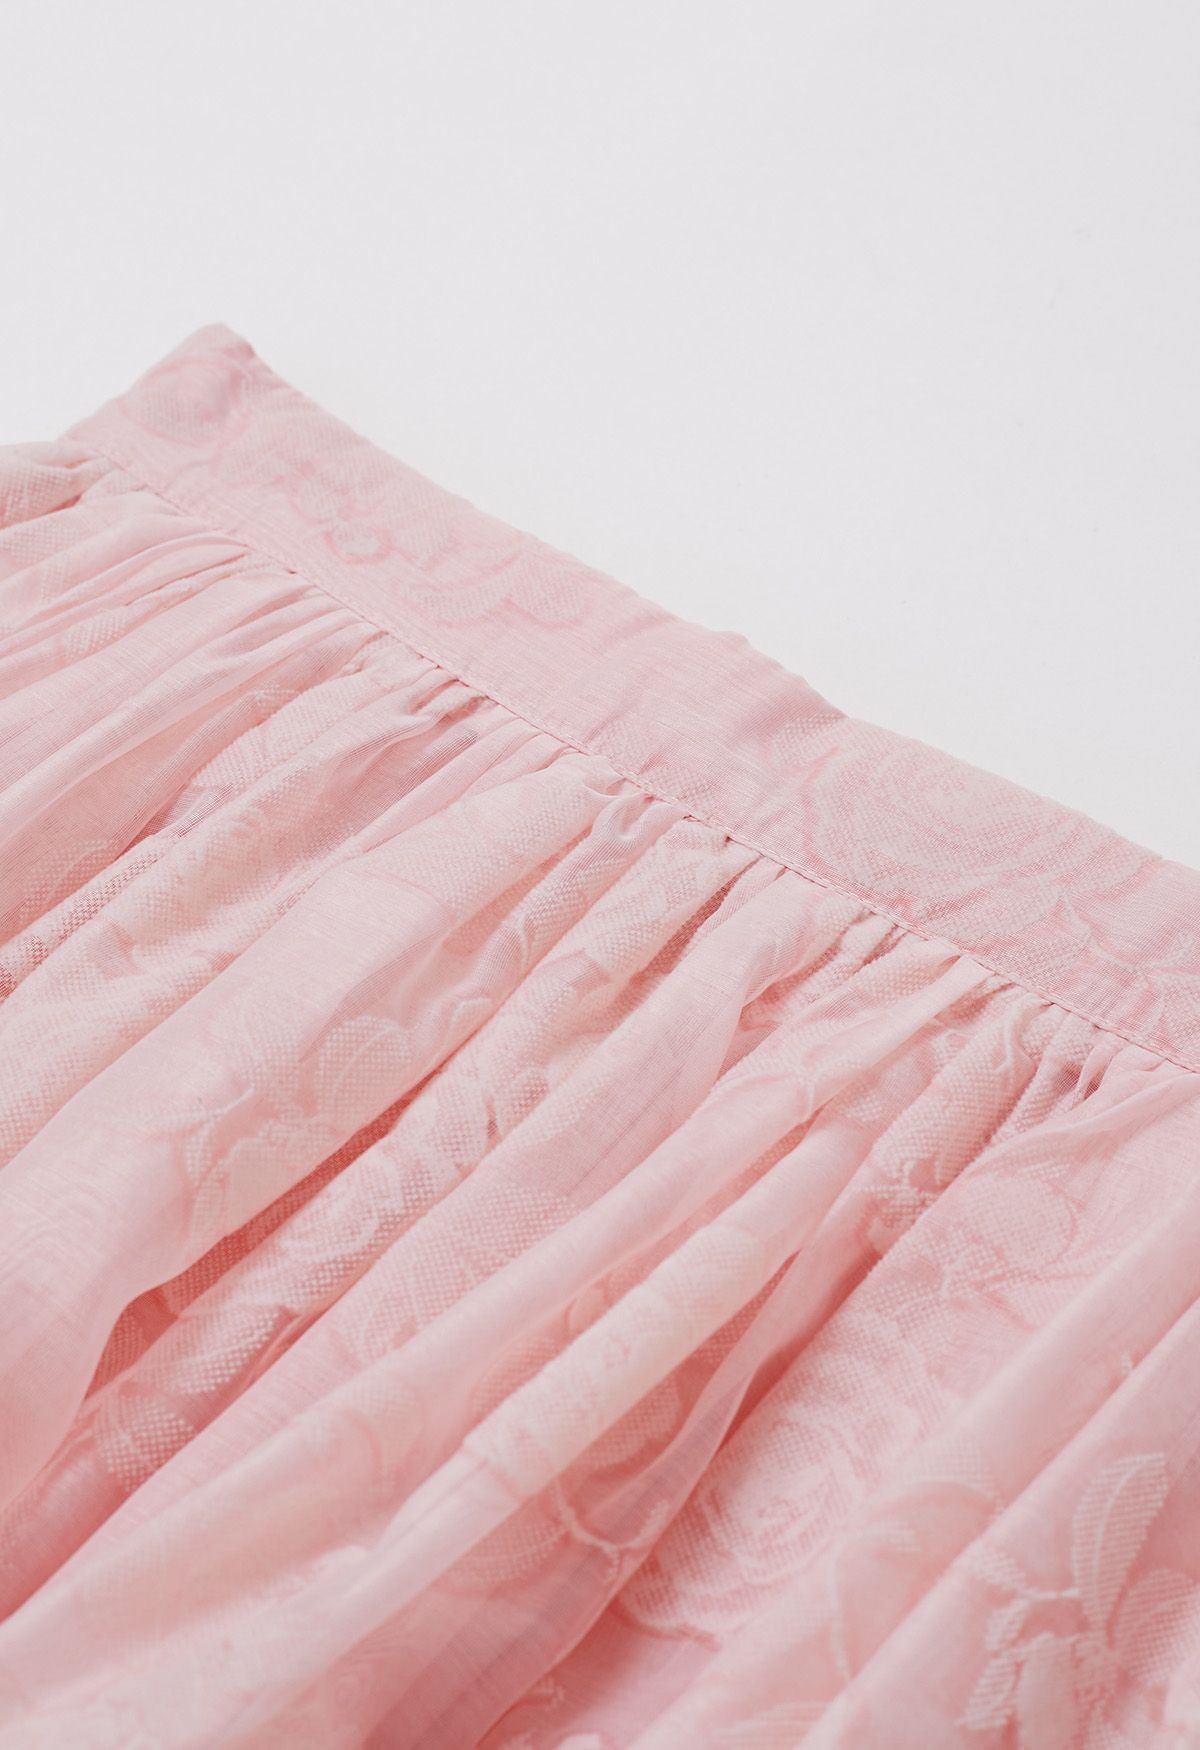 Falda midi de organza con textura de rosa de terciopelo en rosa